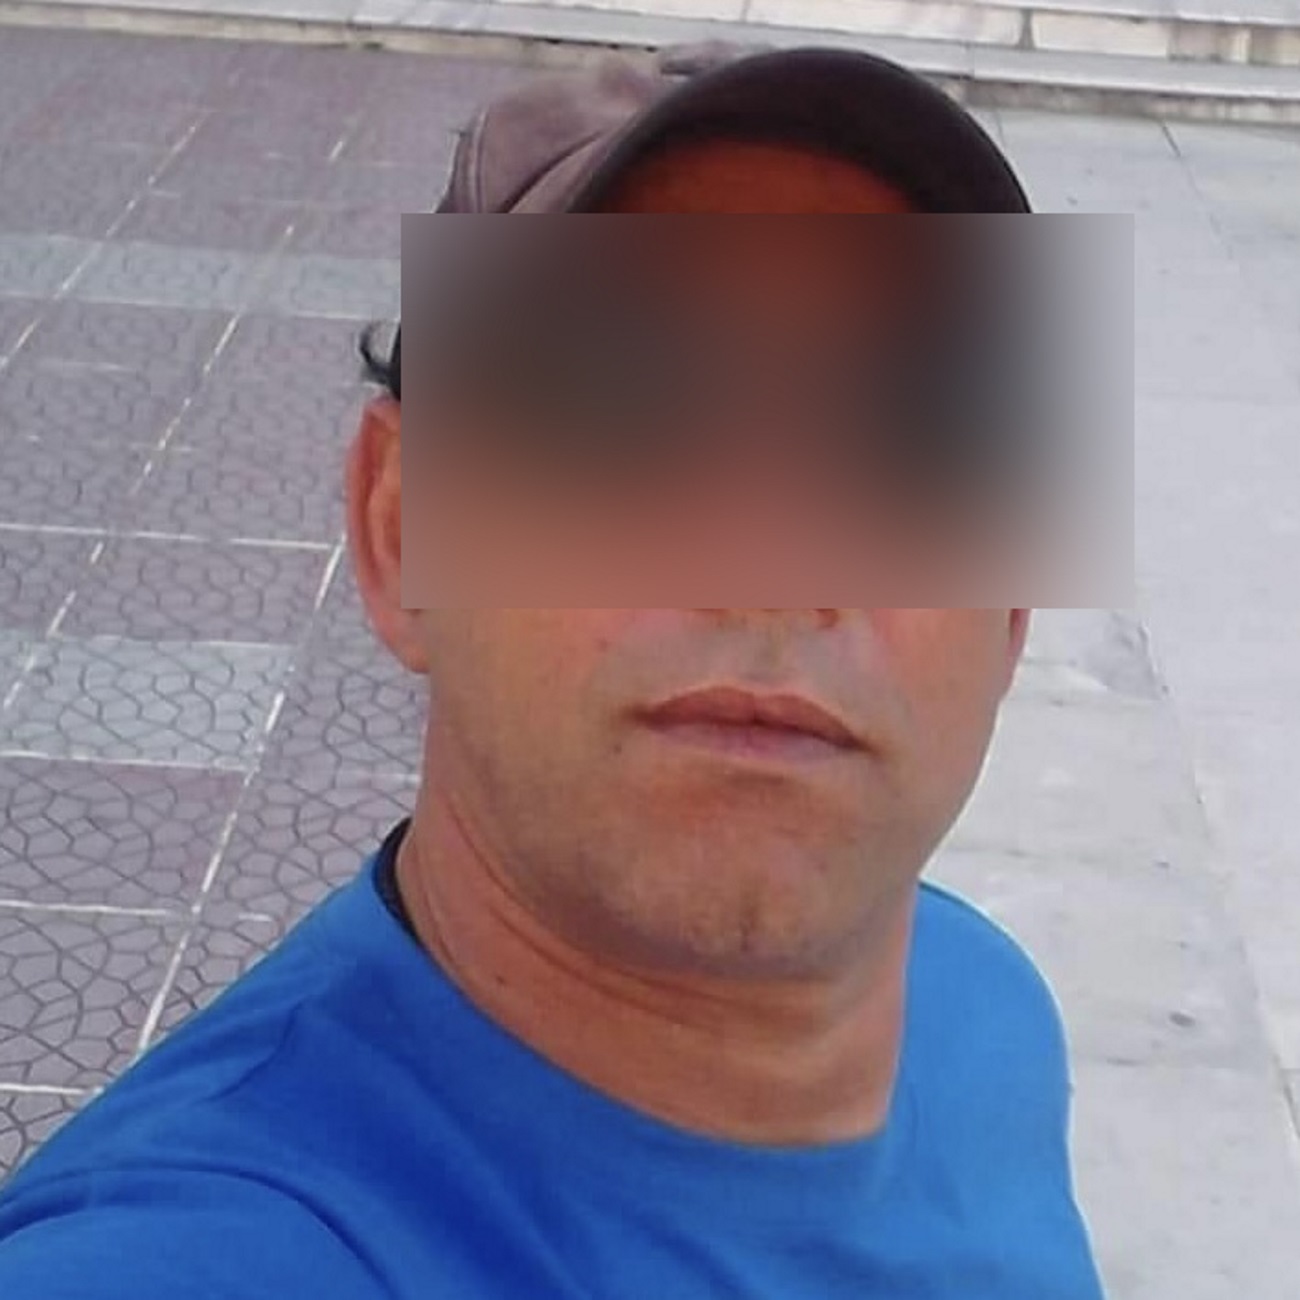 Οικογενειακή Τραγωδία στη Θεσσαλονίκη: Σκότωσε τον 46χρονο πατέρα του γιατί χώρισε την μητέρα του[photos]